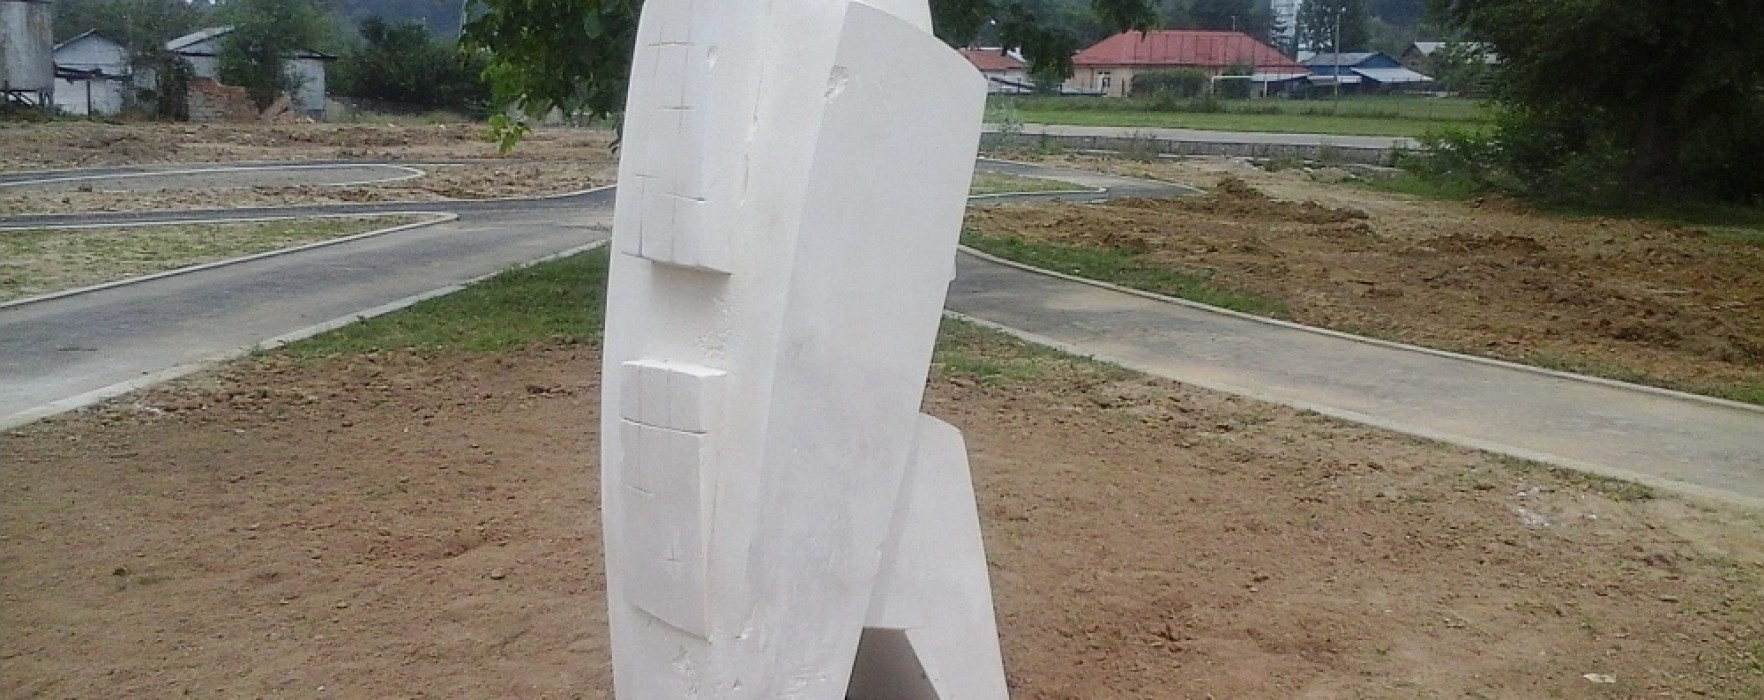 Dâmboviţa: Au fost inaugurate sculpturile realizate la tabăra de ”Vasile Blendea” de la Moreni